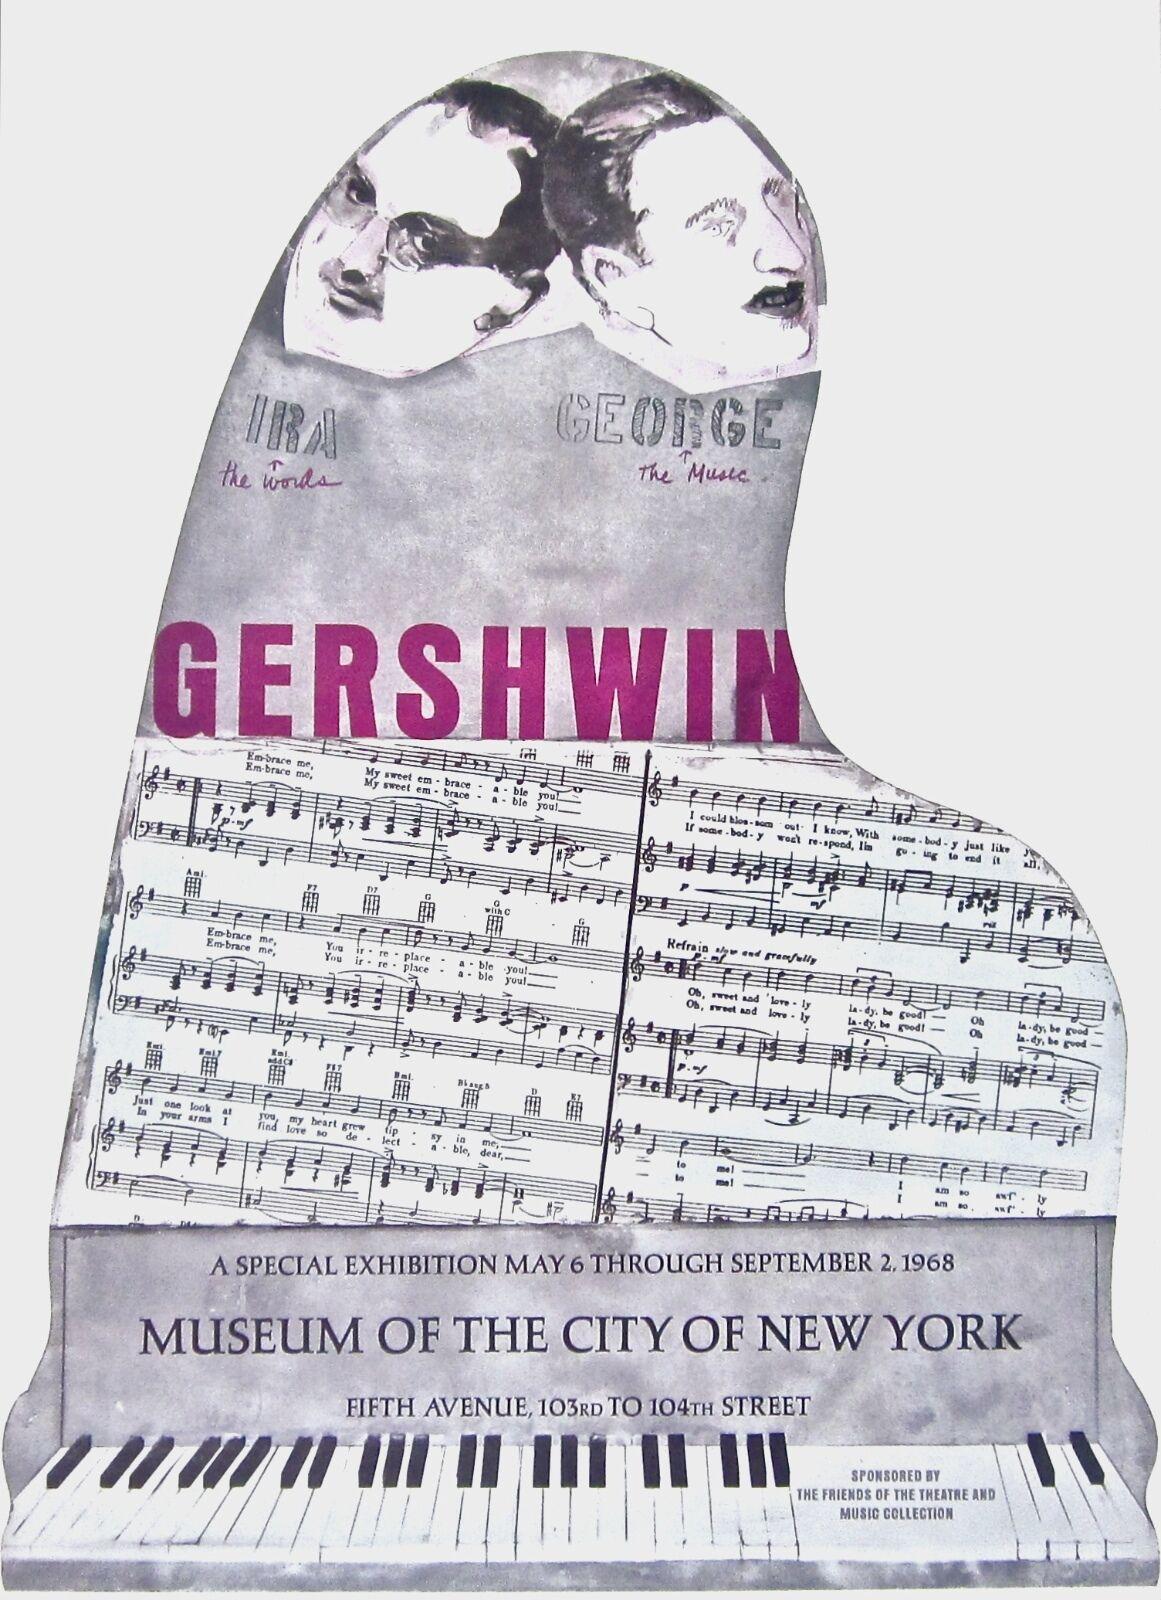 Artistics : D'après Larry Rivers (1923-2002)
Titre : Gershwin Brothers, affiche d'exposition
Année : 1966
Médium : Lithographie sur papier vélin
Taille : 37 x 26 pouces
Condit : Excellent
Notes : Publié par le Musée de la ville de New York.

LARRY